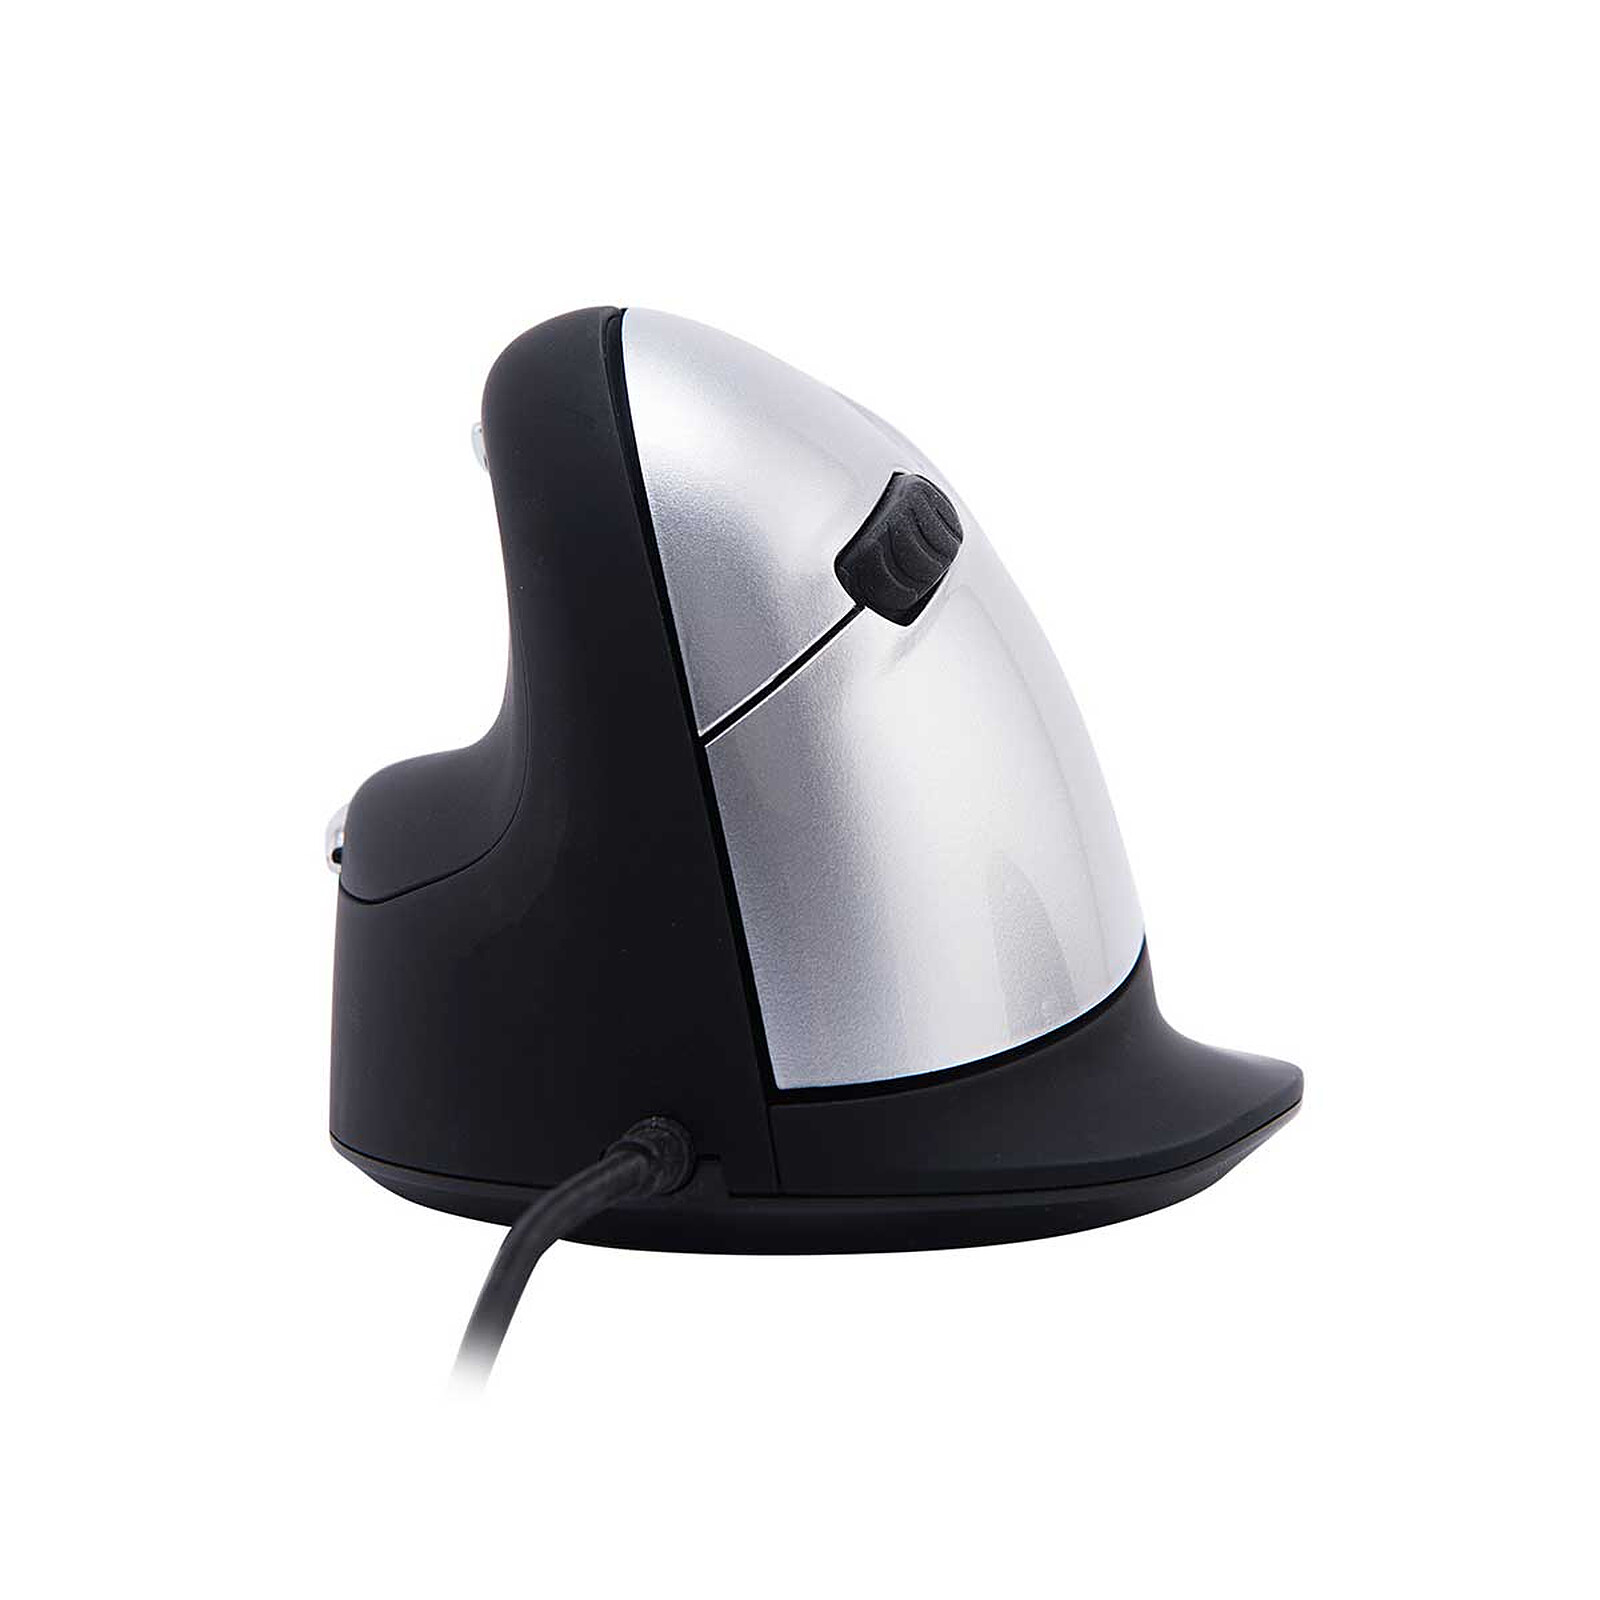 Fellowes Penguin Wireless Mouse (Large) - Souris PC - Garantie 3 ans LDLC